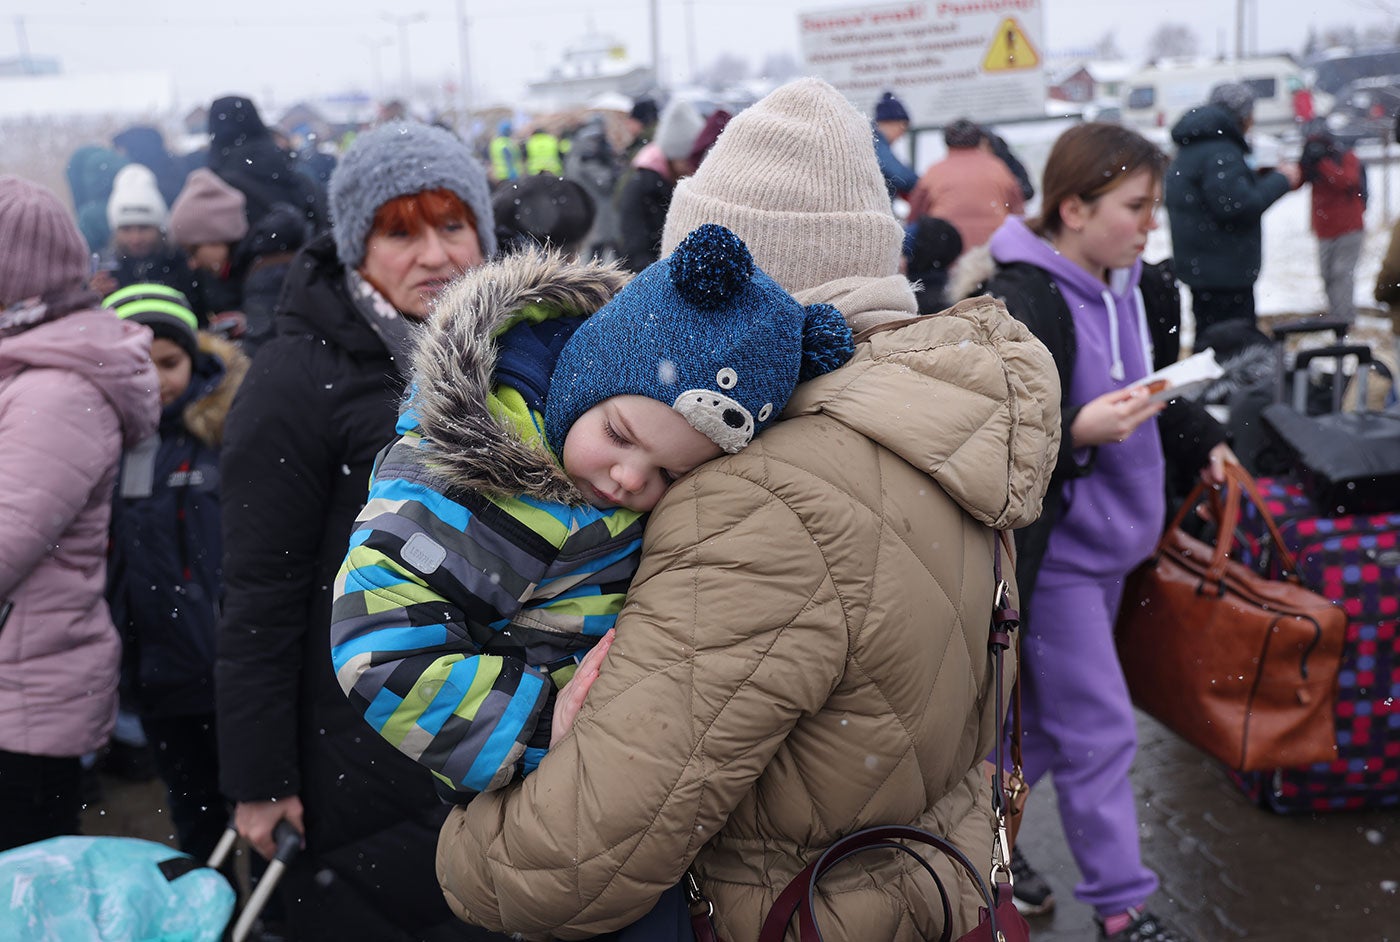 Un grand groupe d'Ukrainiens, dont beaucoup portent des vêtements d'hiver et transportent des bagages, se tiennent en groupe. Au premier plan, un parent tient un enfant.